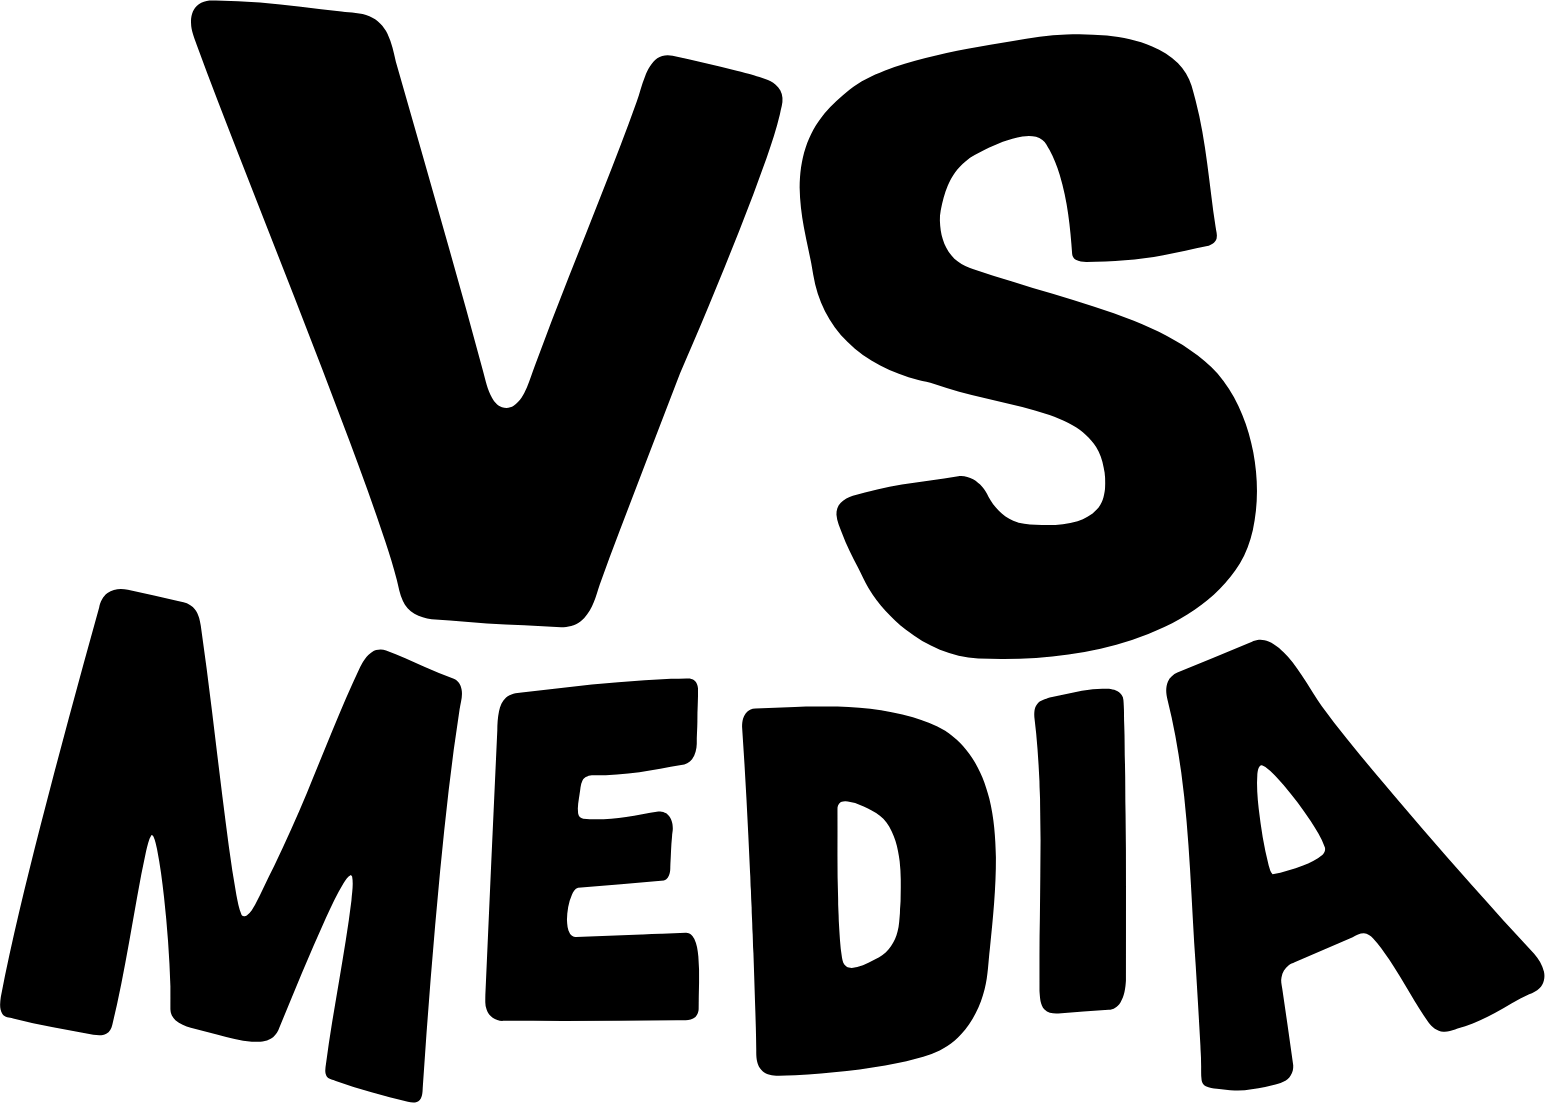 VS Media logo (transparent PNG)